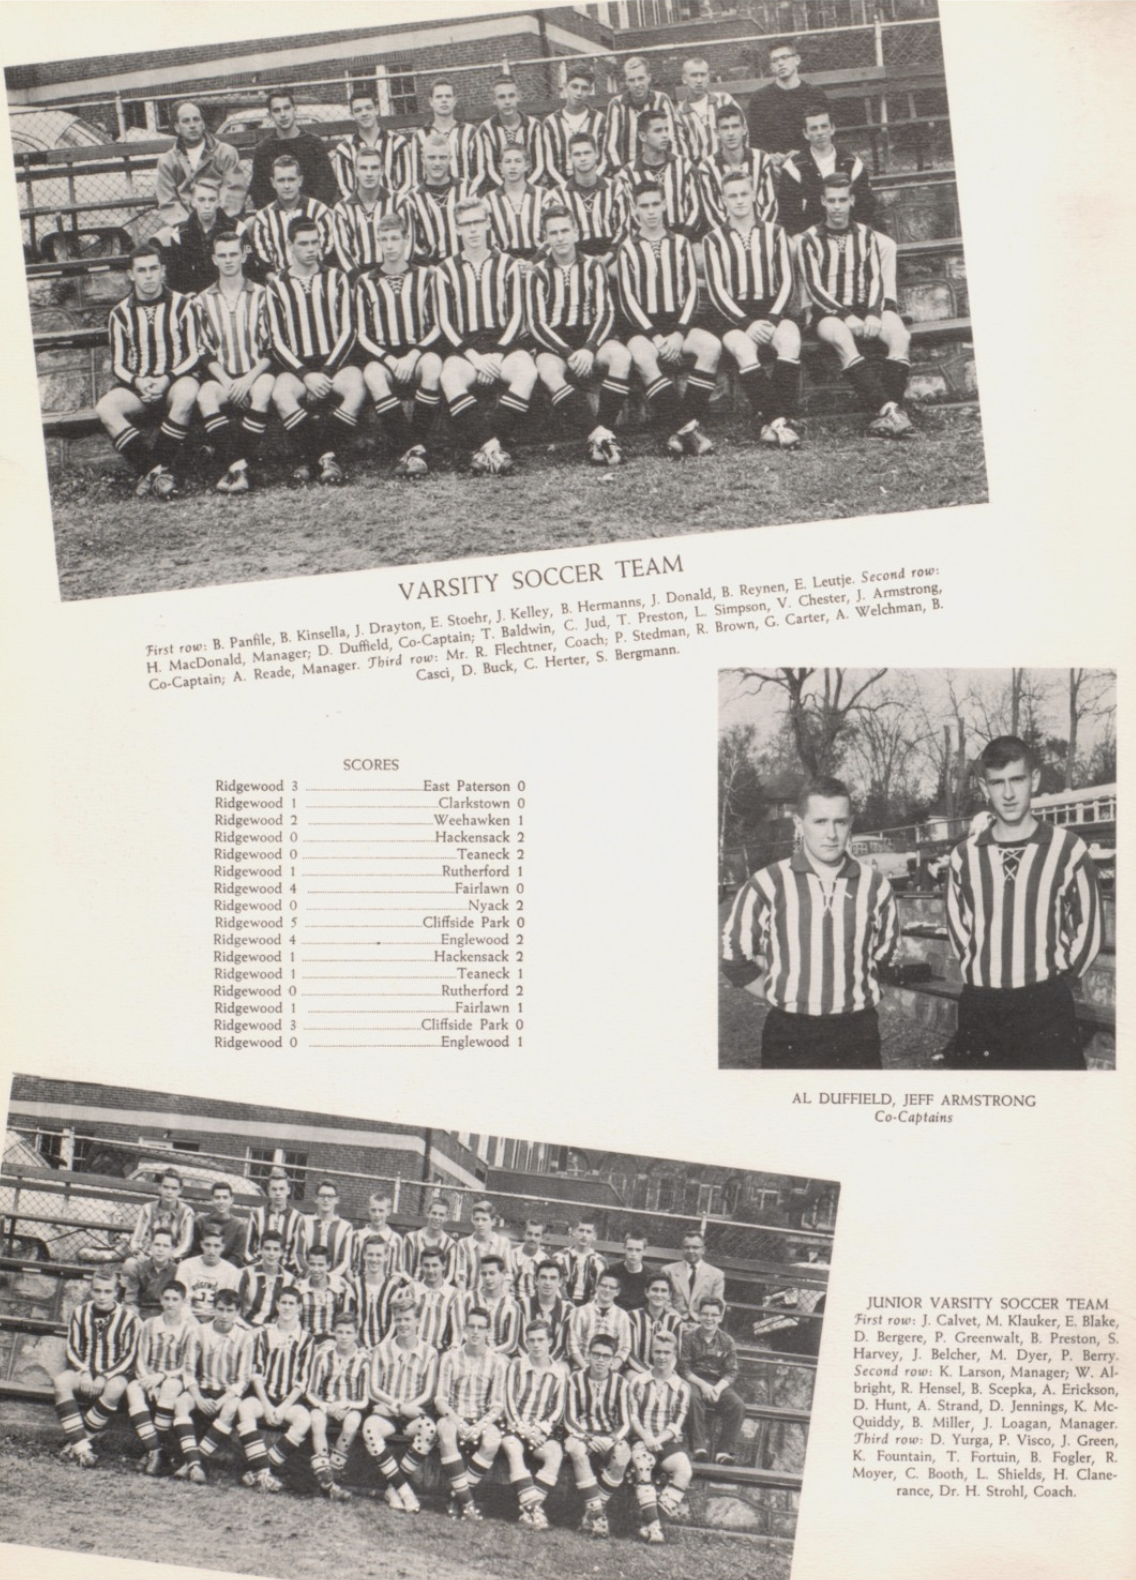 1960 Boys’ Soccer Team